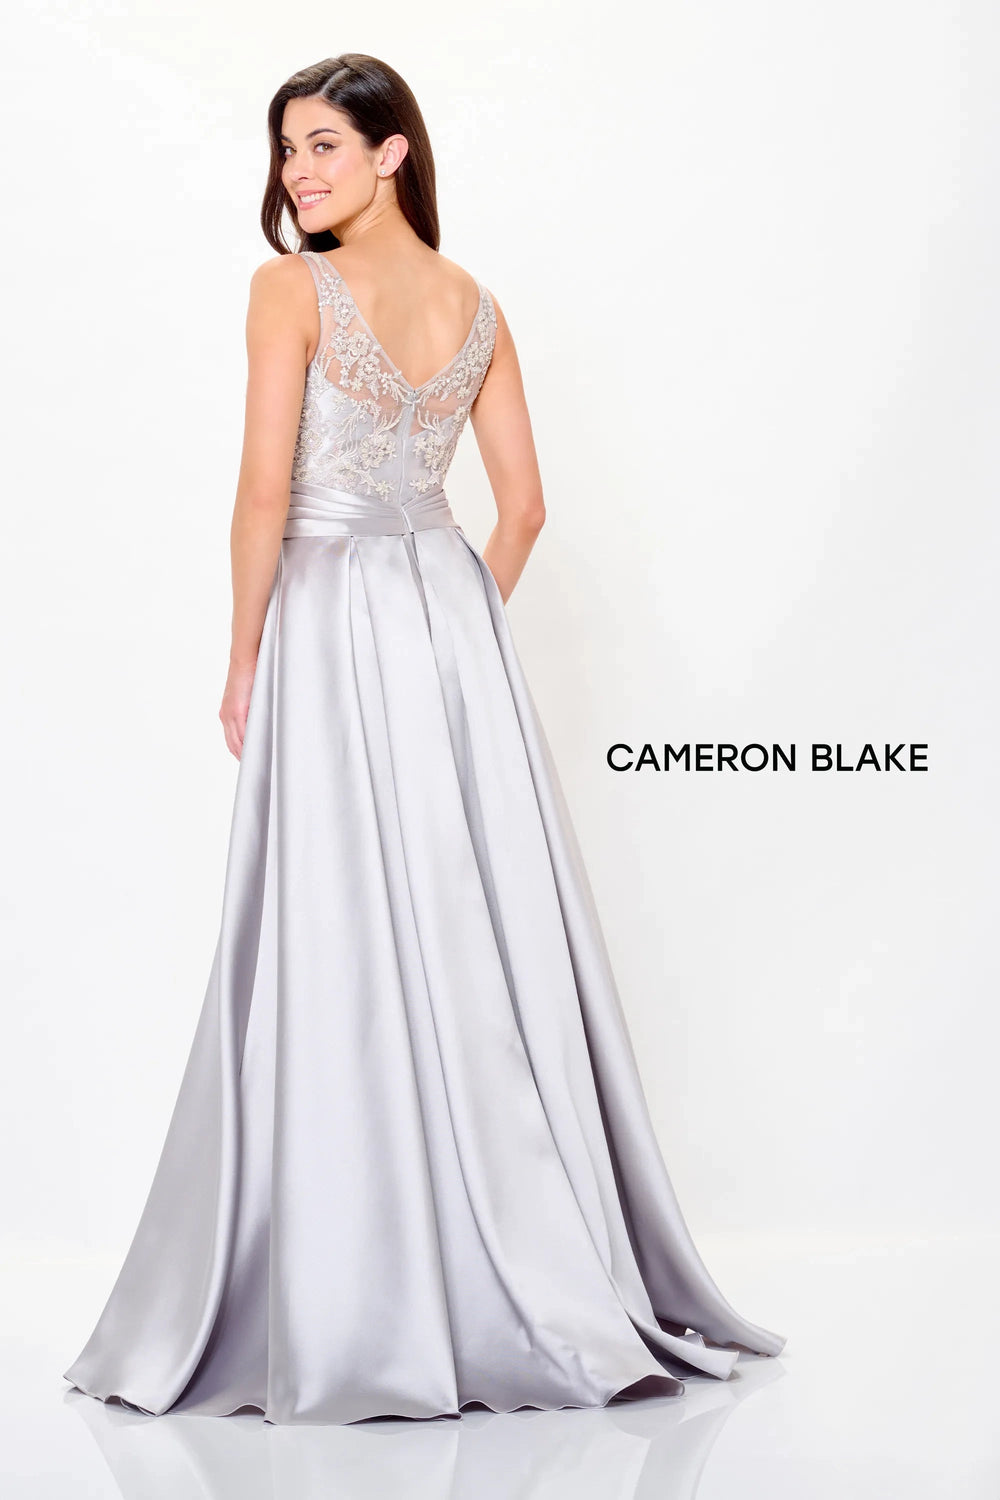 Mon Cheri Cameron Blake Dress Mon Cheri Cameron Blake CB3244 Dress